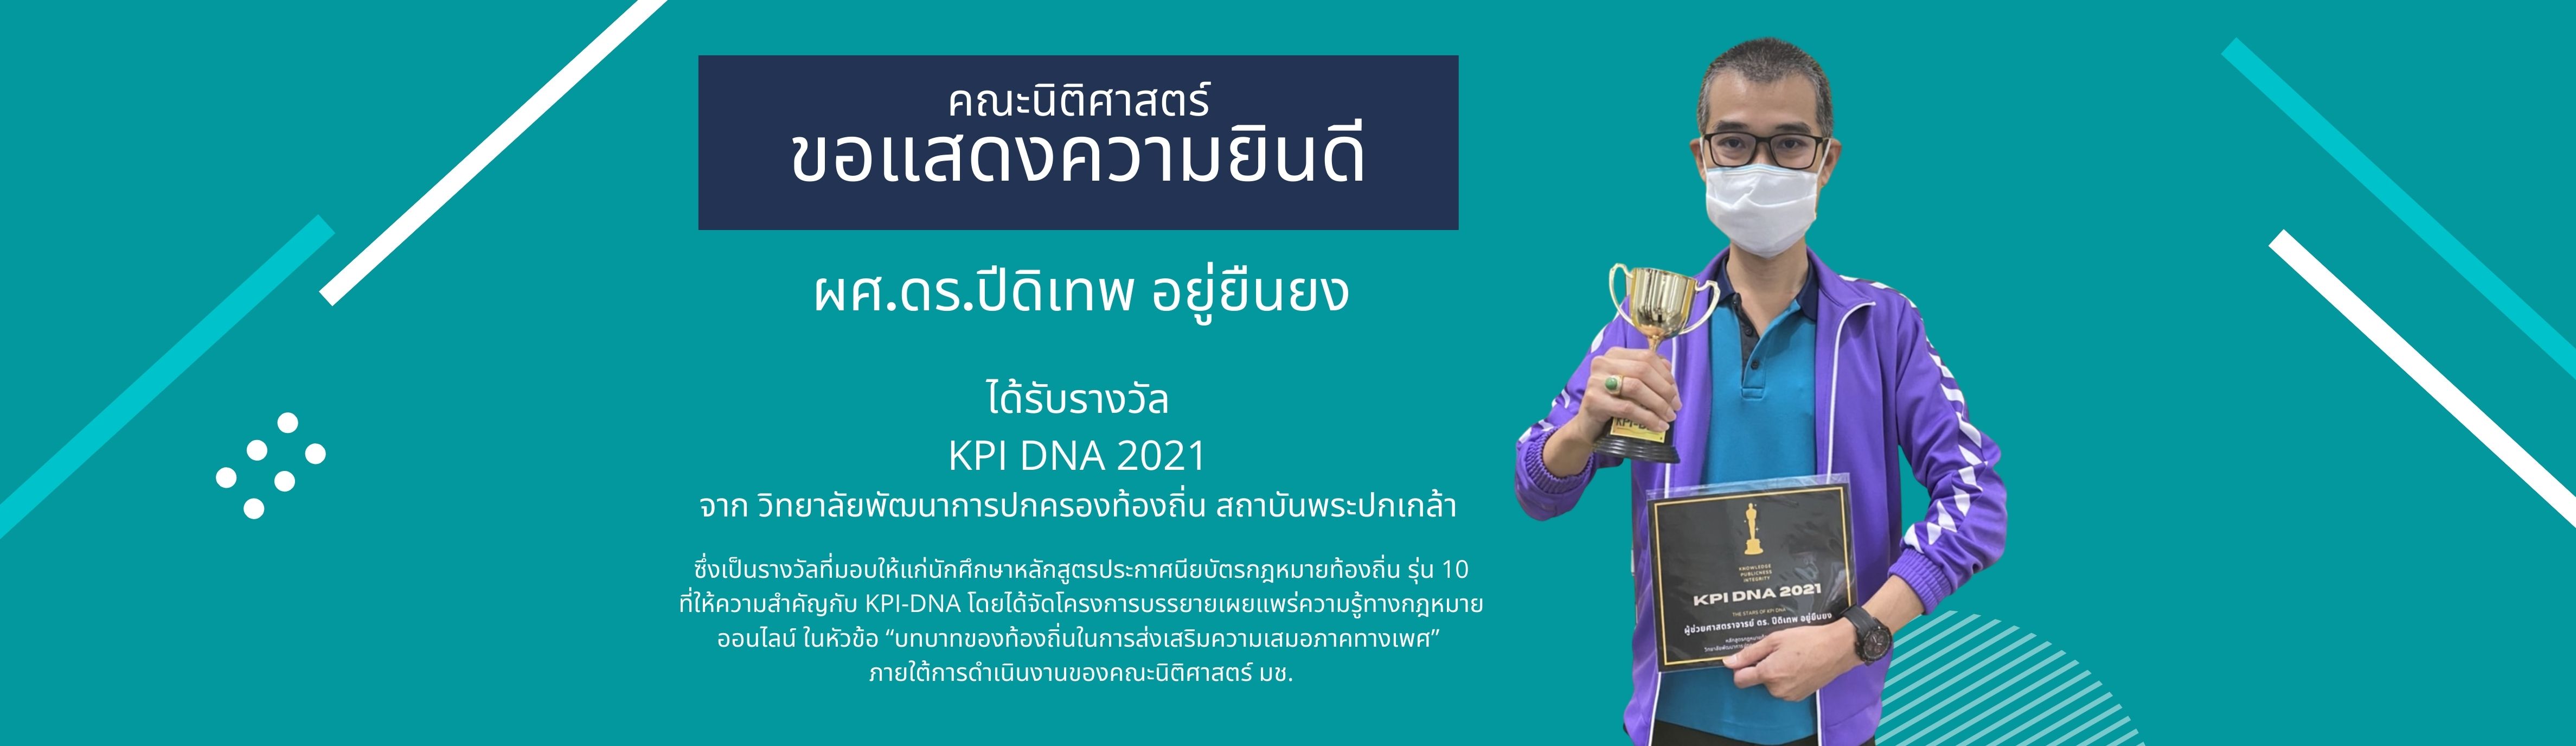 คณะนิติศาสตร์ ขอแสดงความยินดีกับ ผศ.ดร.ปีดิเทพ อยู่ยืนยง เนื่องในโอกาสที่ได้รับรางวัล KPI DNA 2021 จาก วิทยาลัยพัฒนาการปกครองท้องถิ่น สถาบันพระปกเกล้า